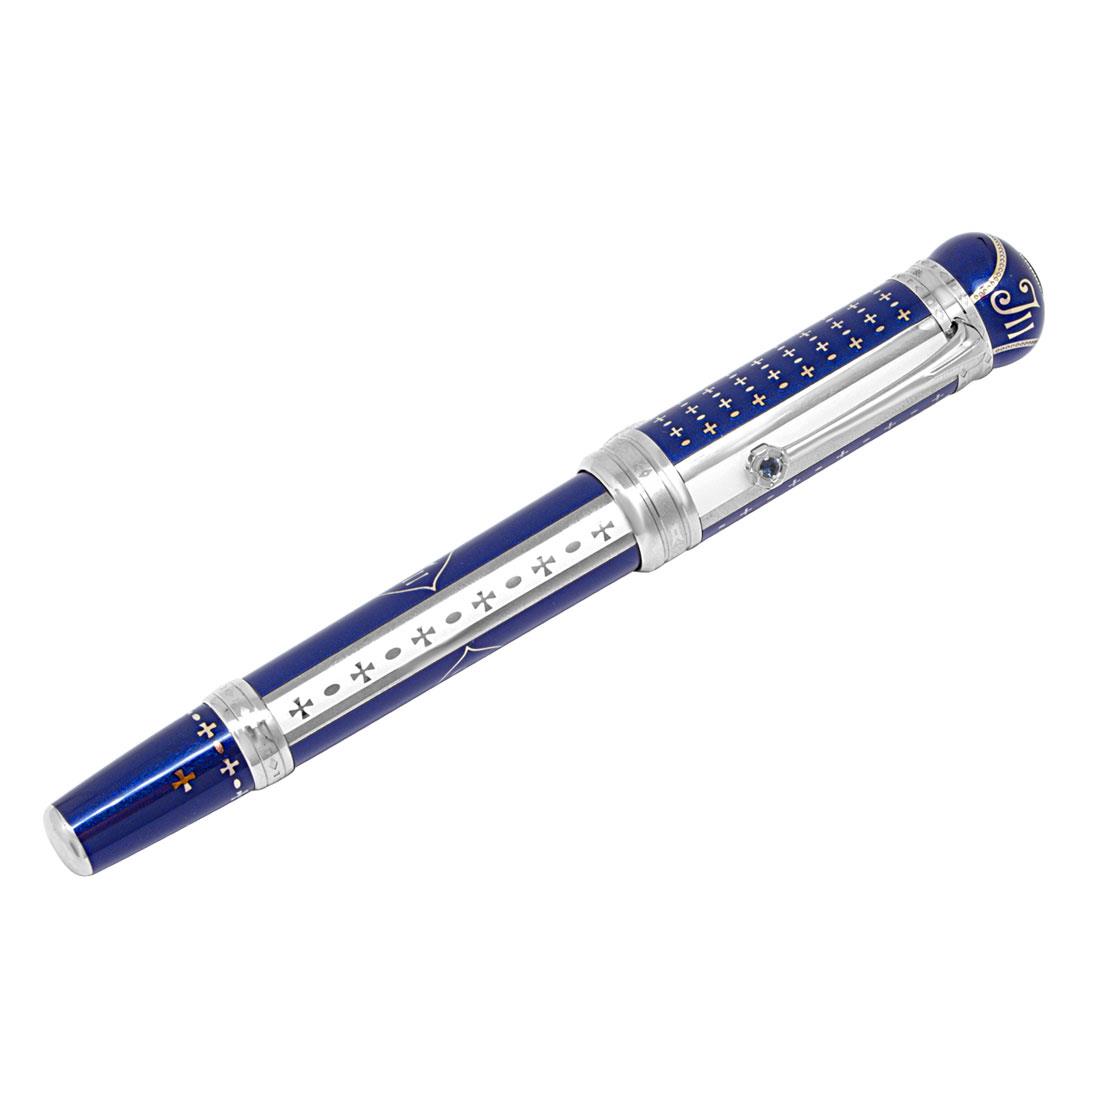  Fountain pen, blue color - MONTBLANC